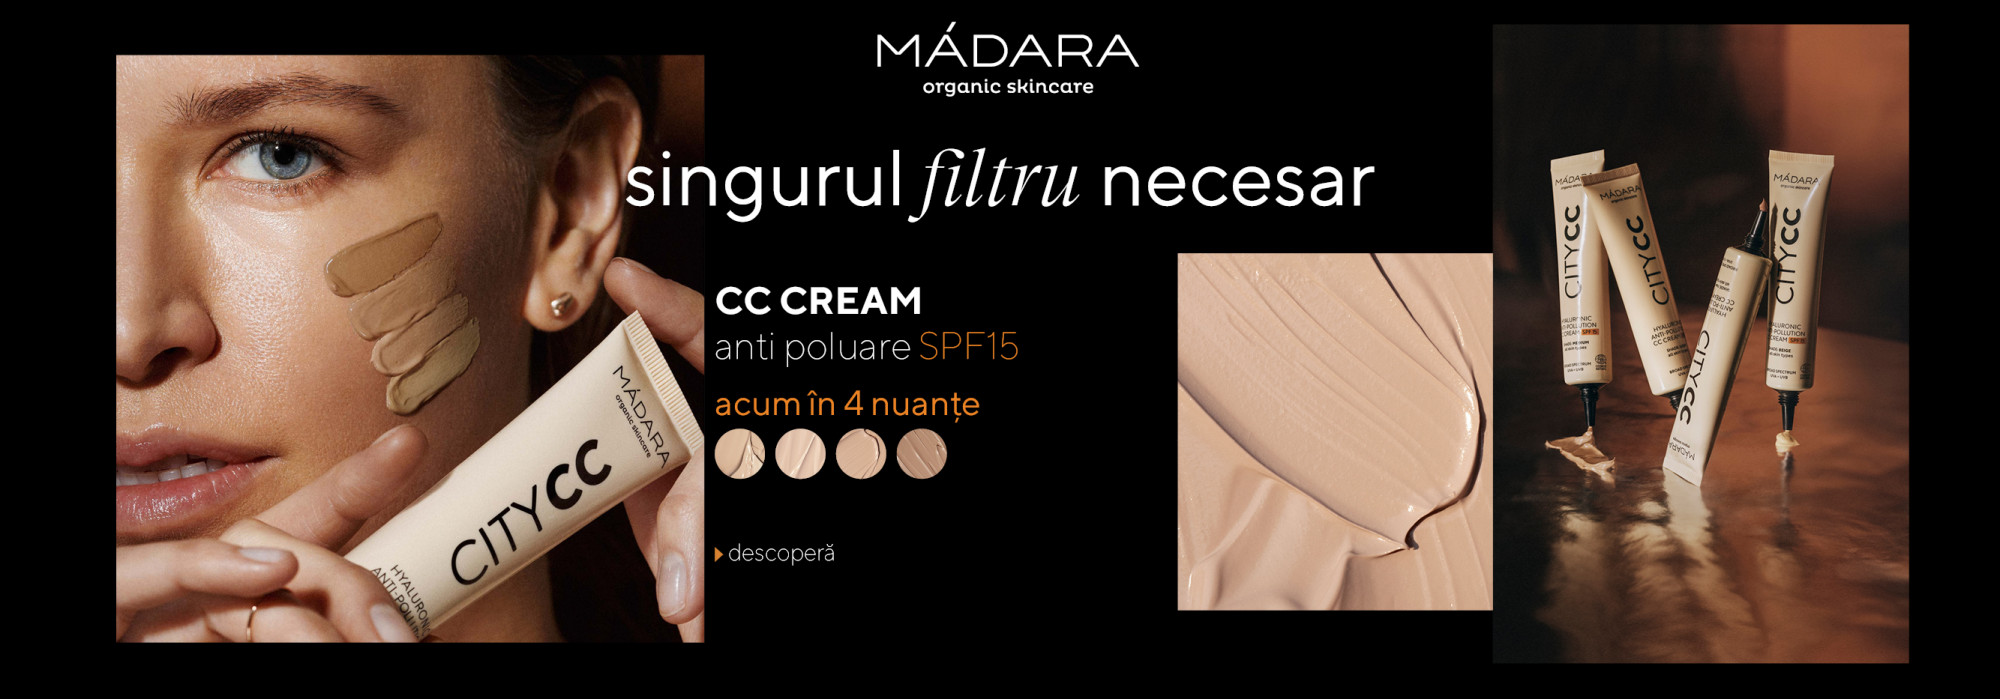 Madara CC Creams